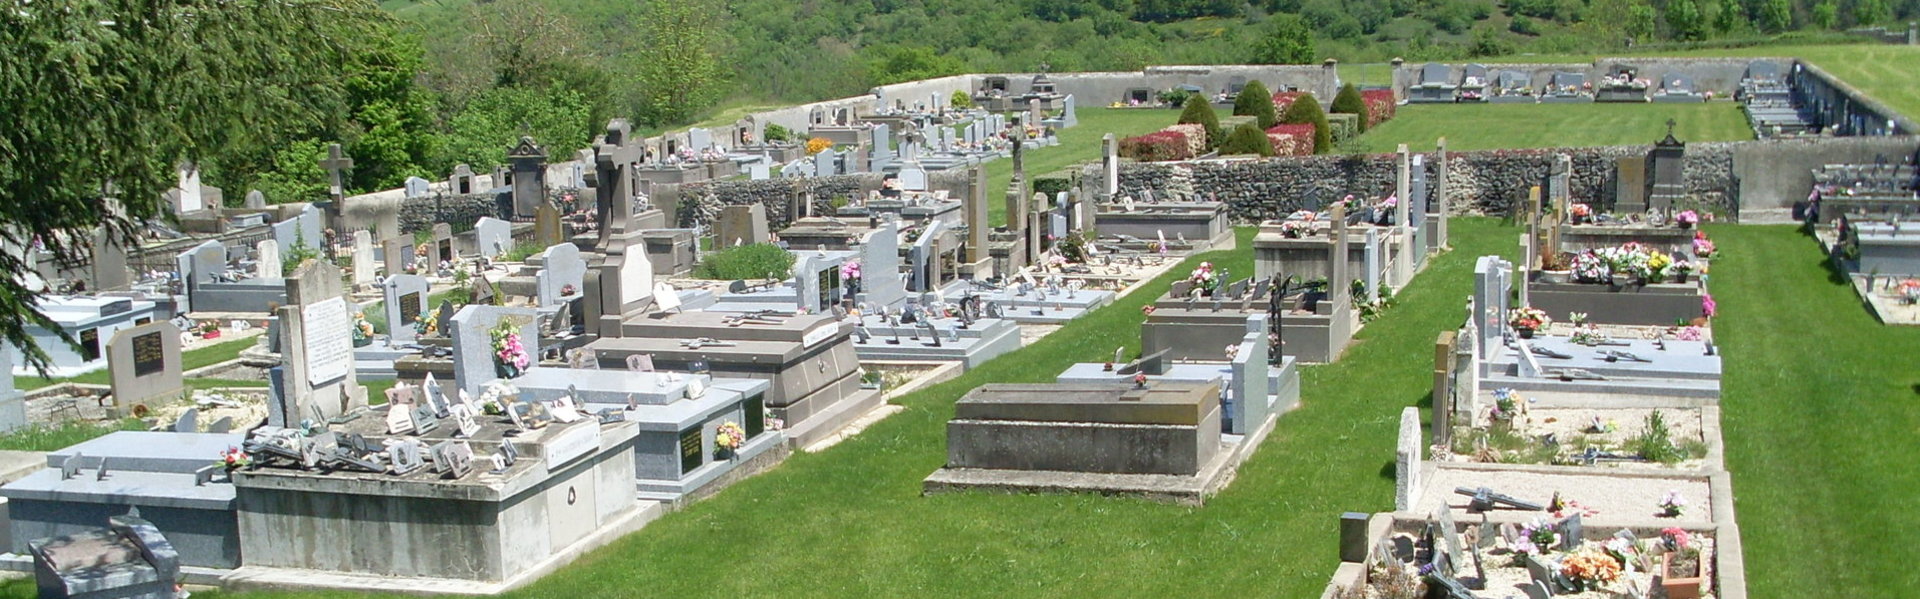 Le cimetière et columbarium